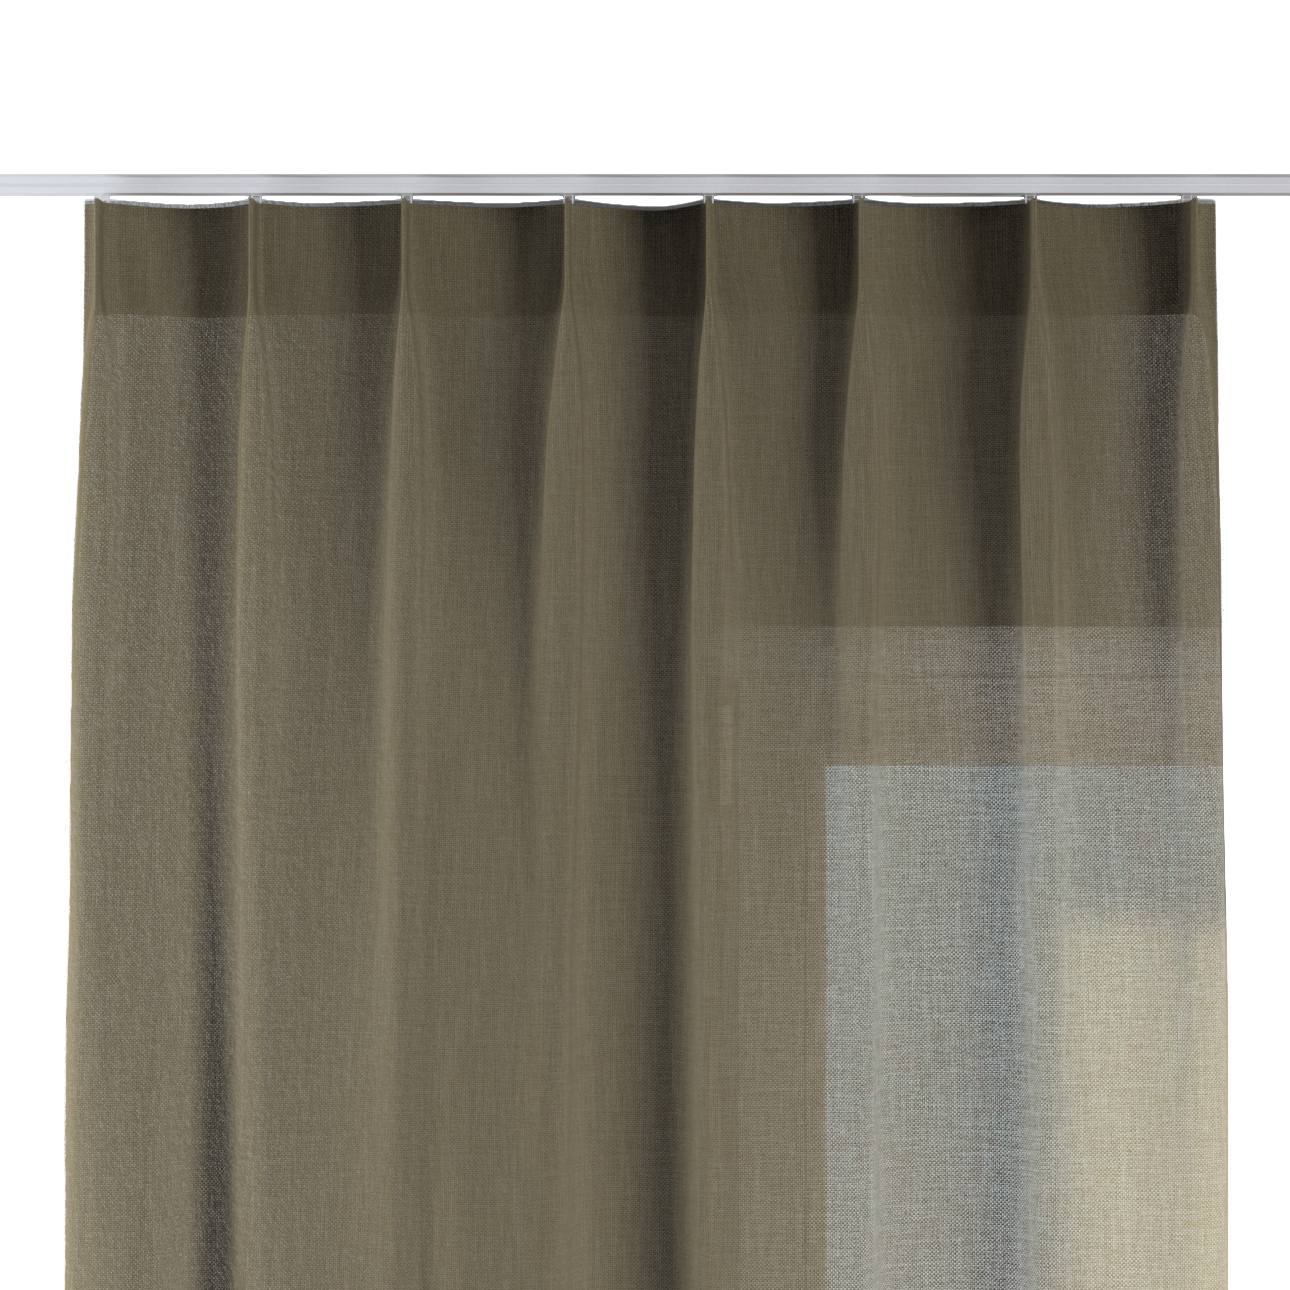 Vorhang mit flämischen 1-er Falten, khaki, Sensual Premium (144-41) günstig online kaufen